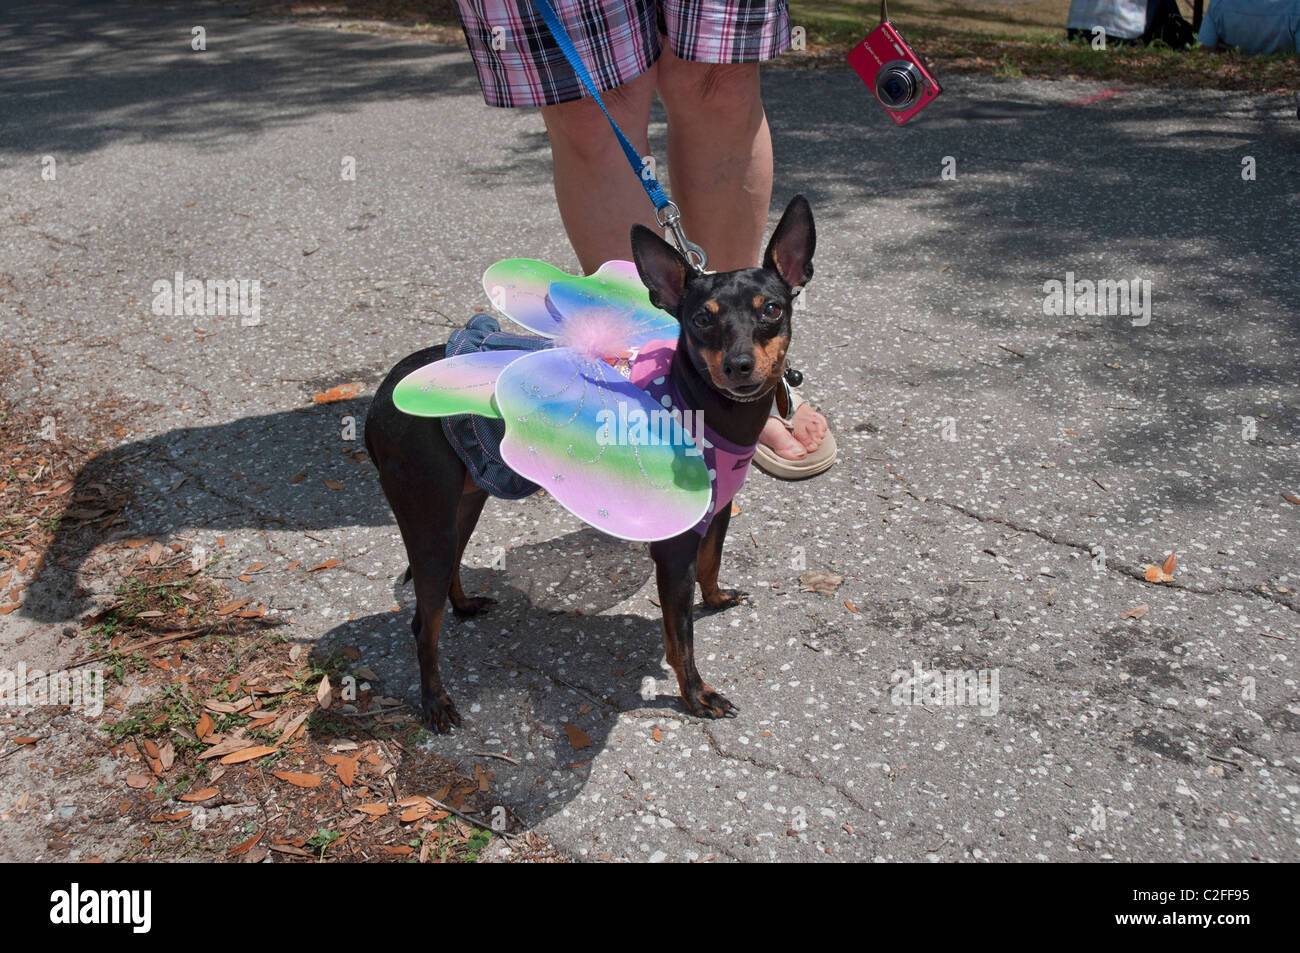 Tage High Springs Florida Zwergpinscher Hund während in Schmetterling Kostüm gekleidet Stockfotografie -